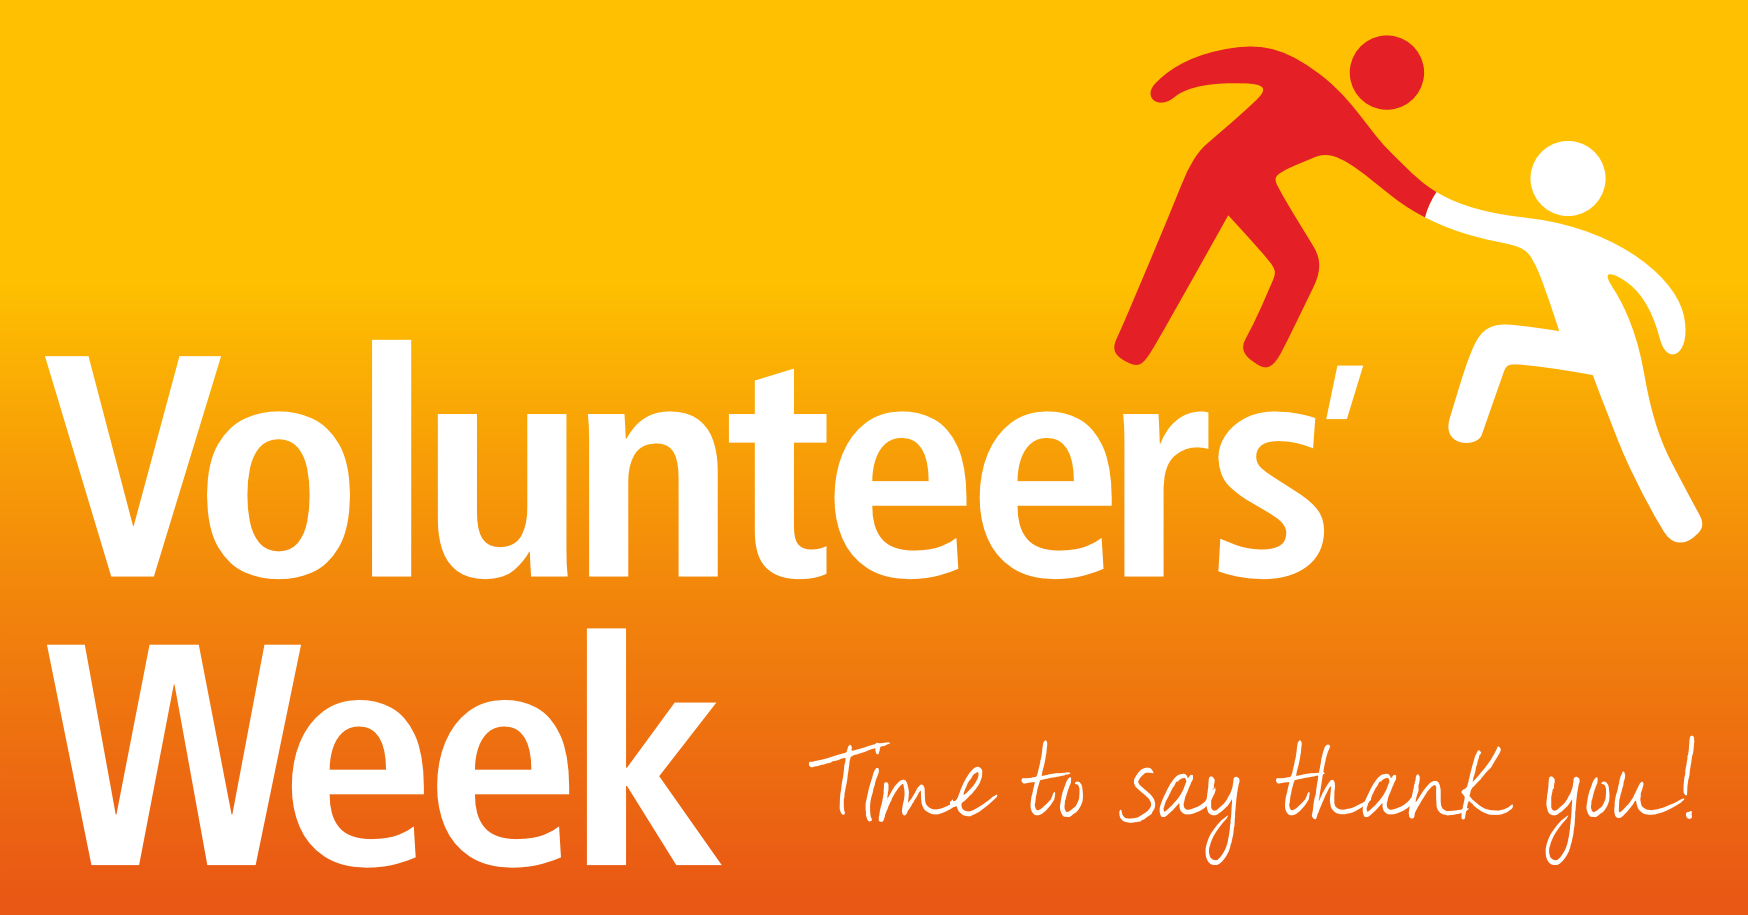 Image for Volunteers Week 2015